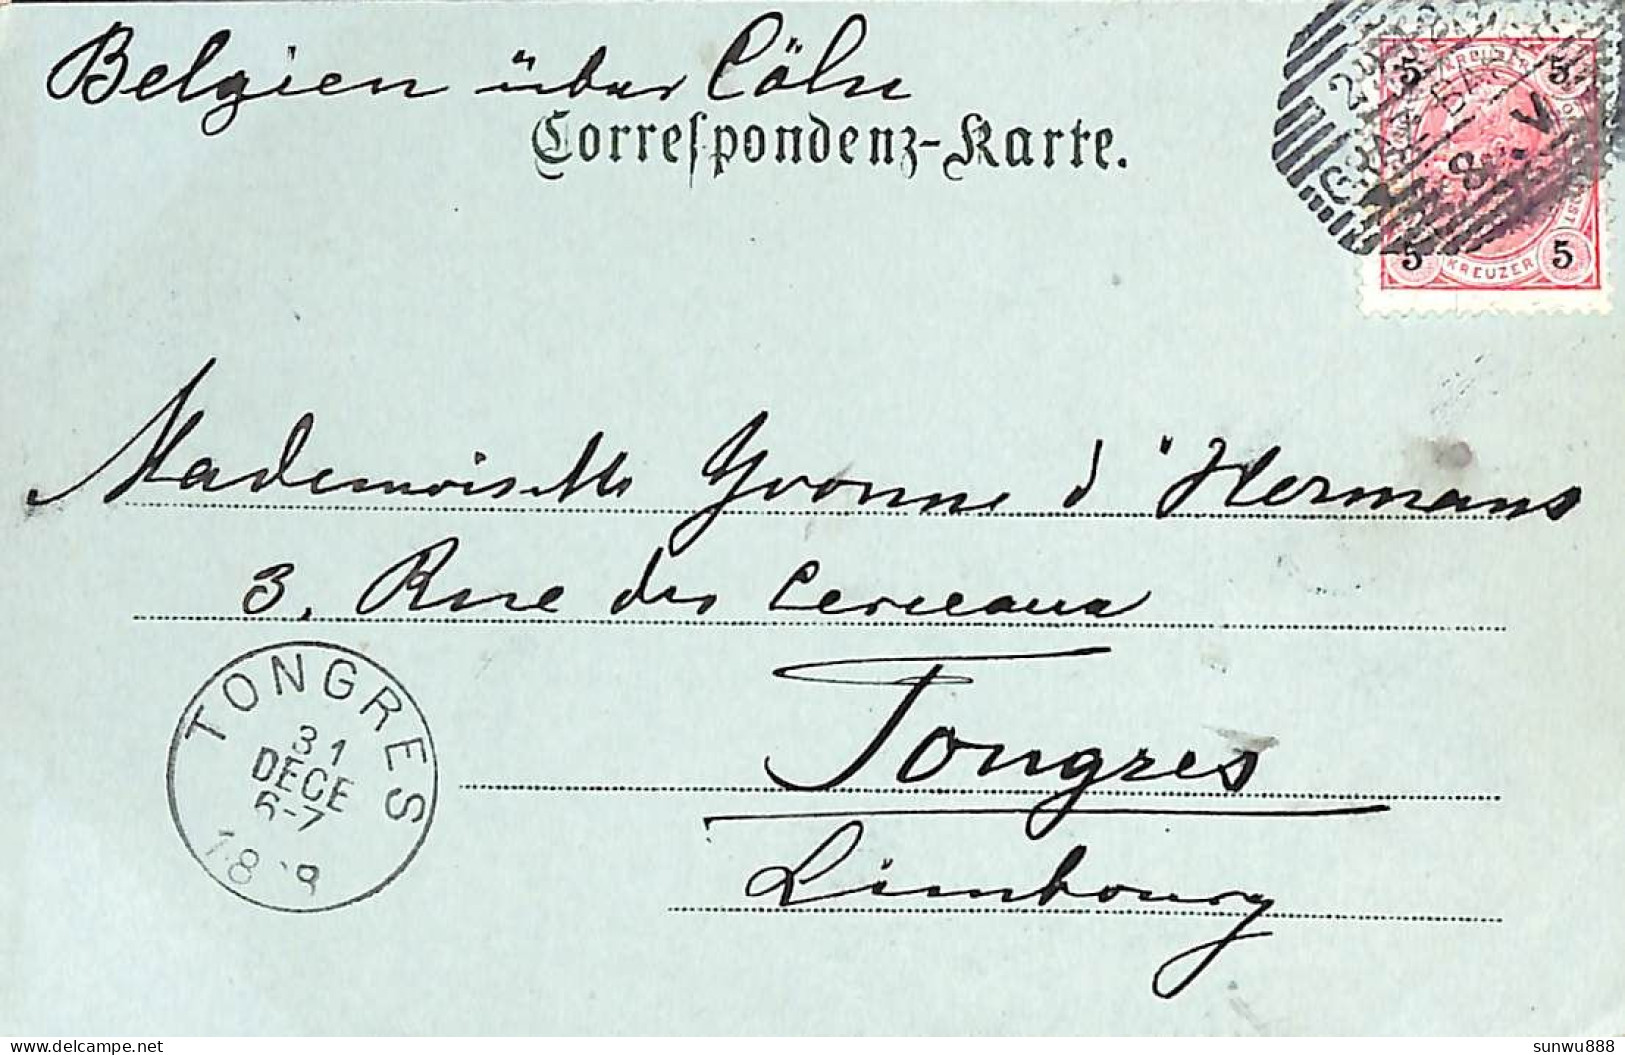 Gruss Aus Ehrenhausen (1898) - Ehrenhausen